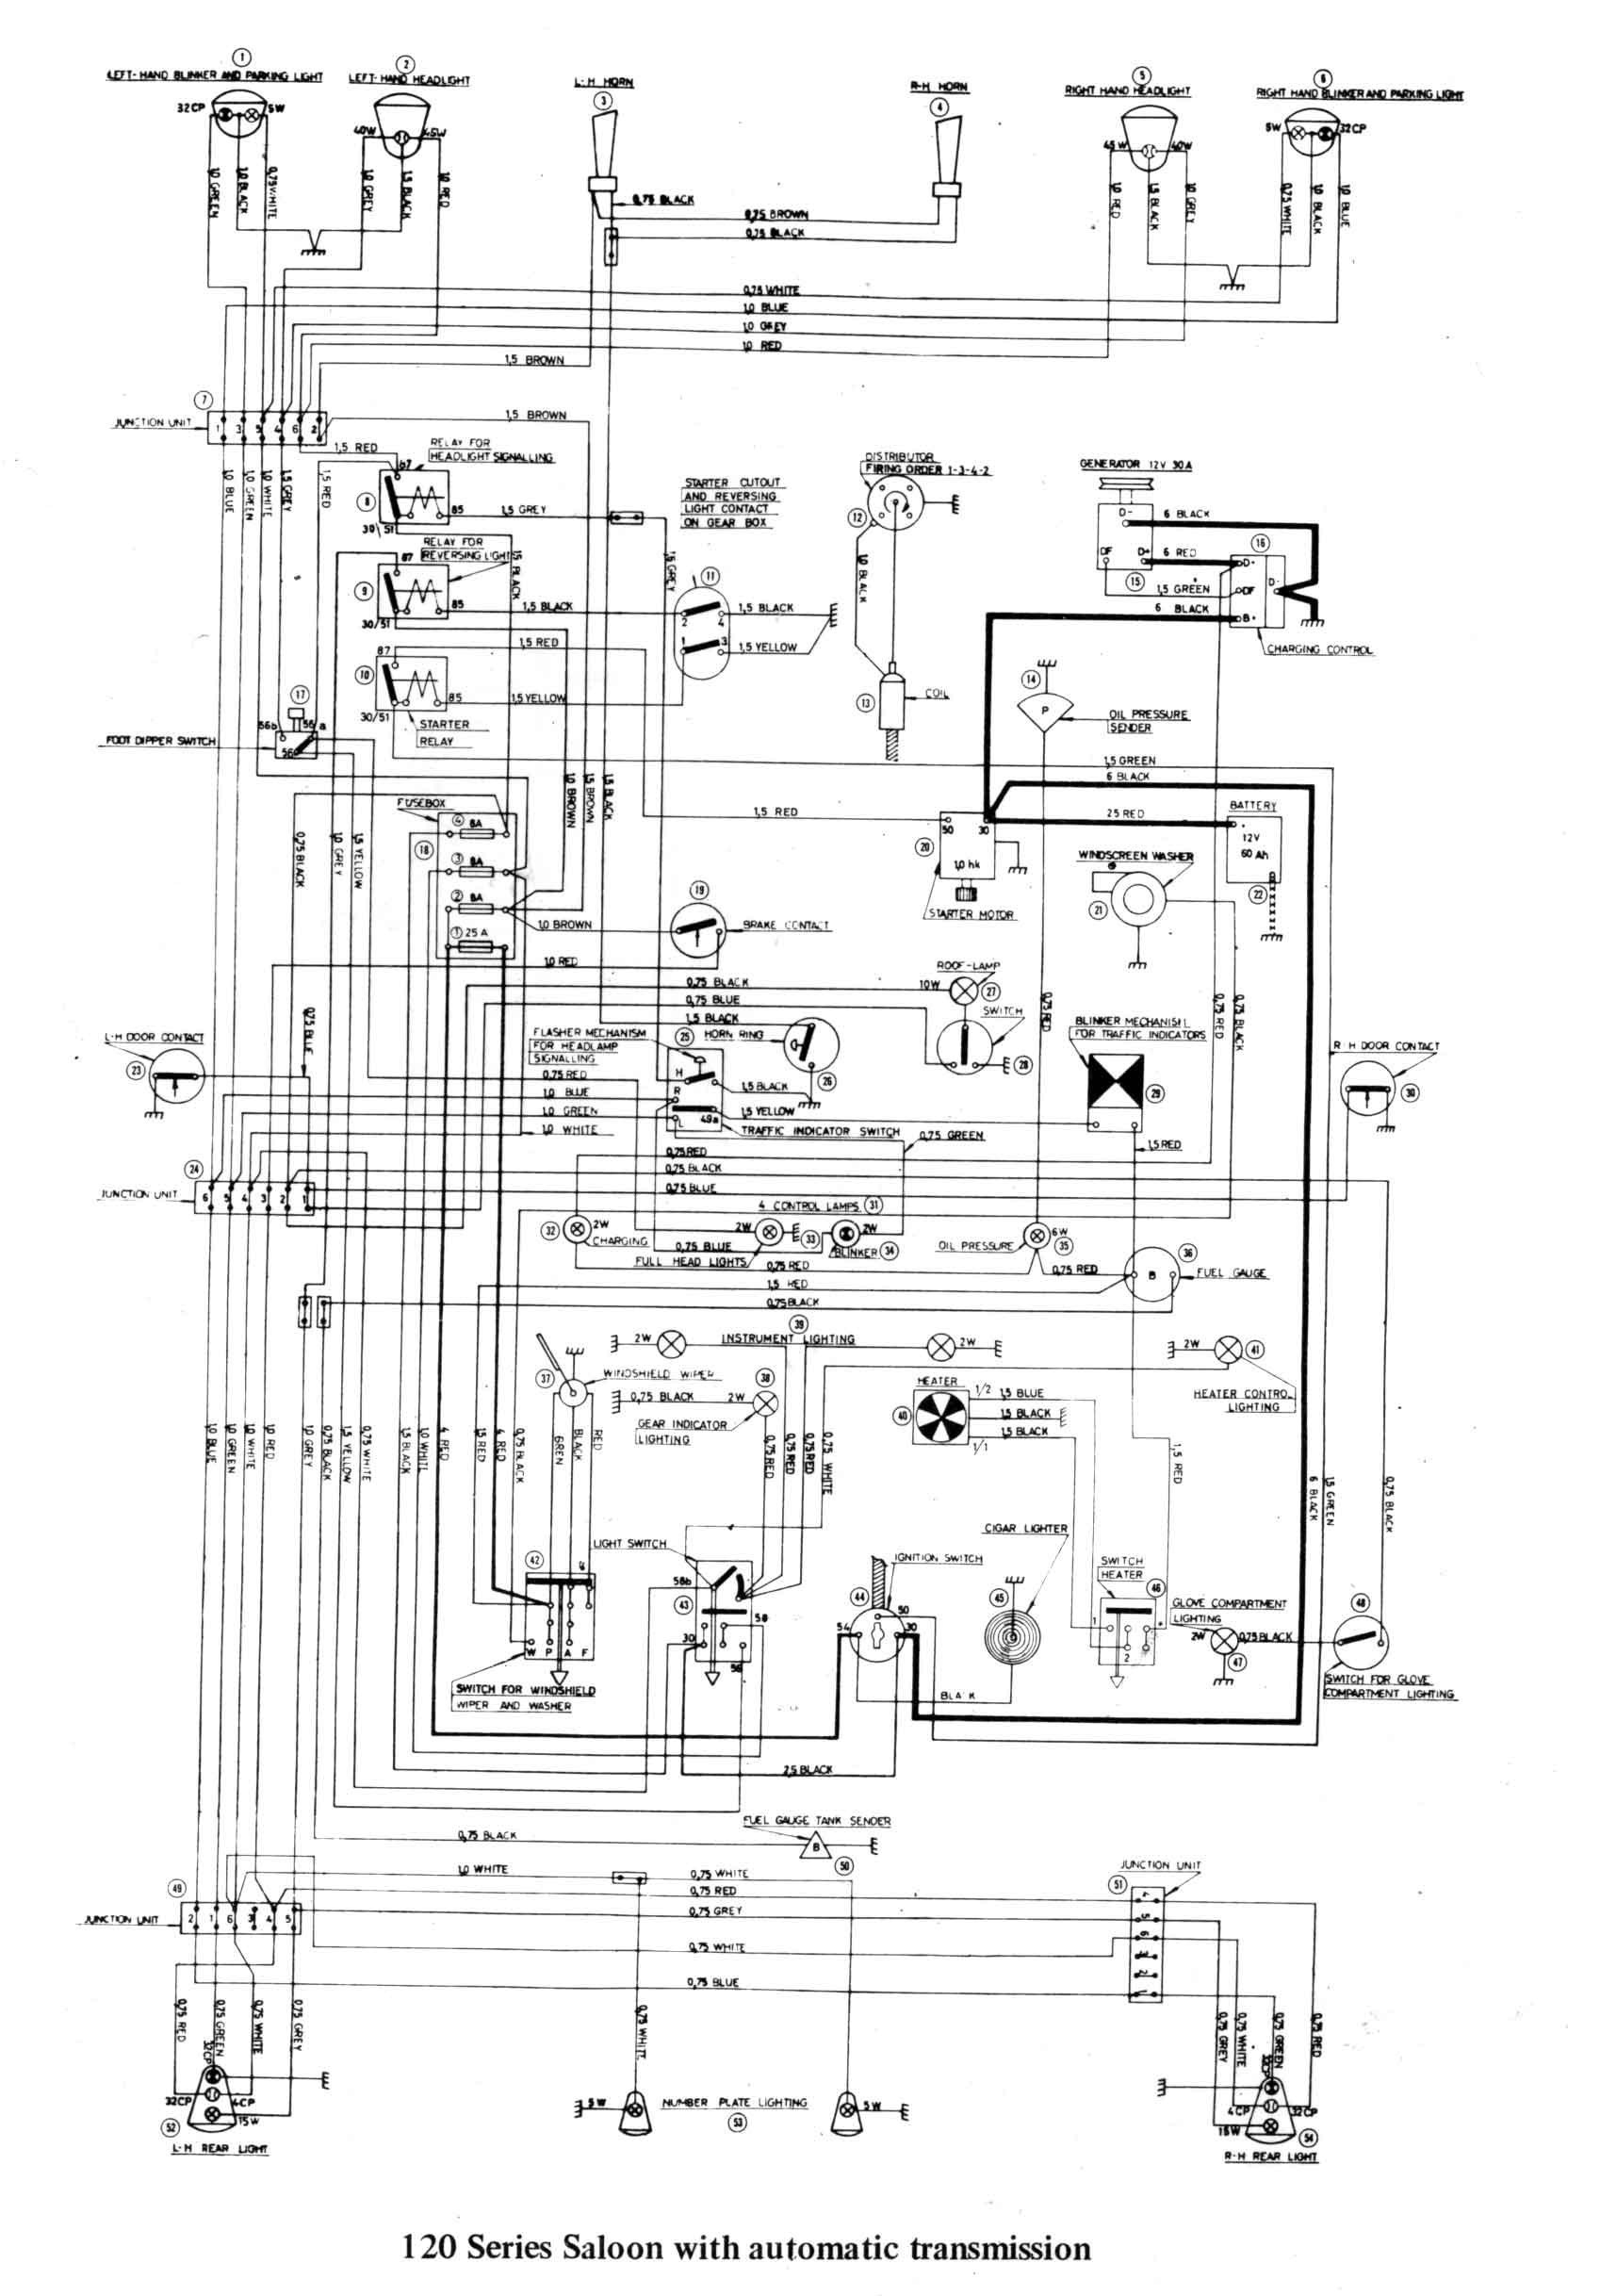 Schematic Diagram Of Heat Engine 9906c Car Alternator Wiring Diagram Unique Of Schematic Diagram Of Heat Engine